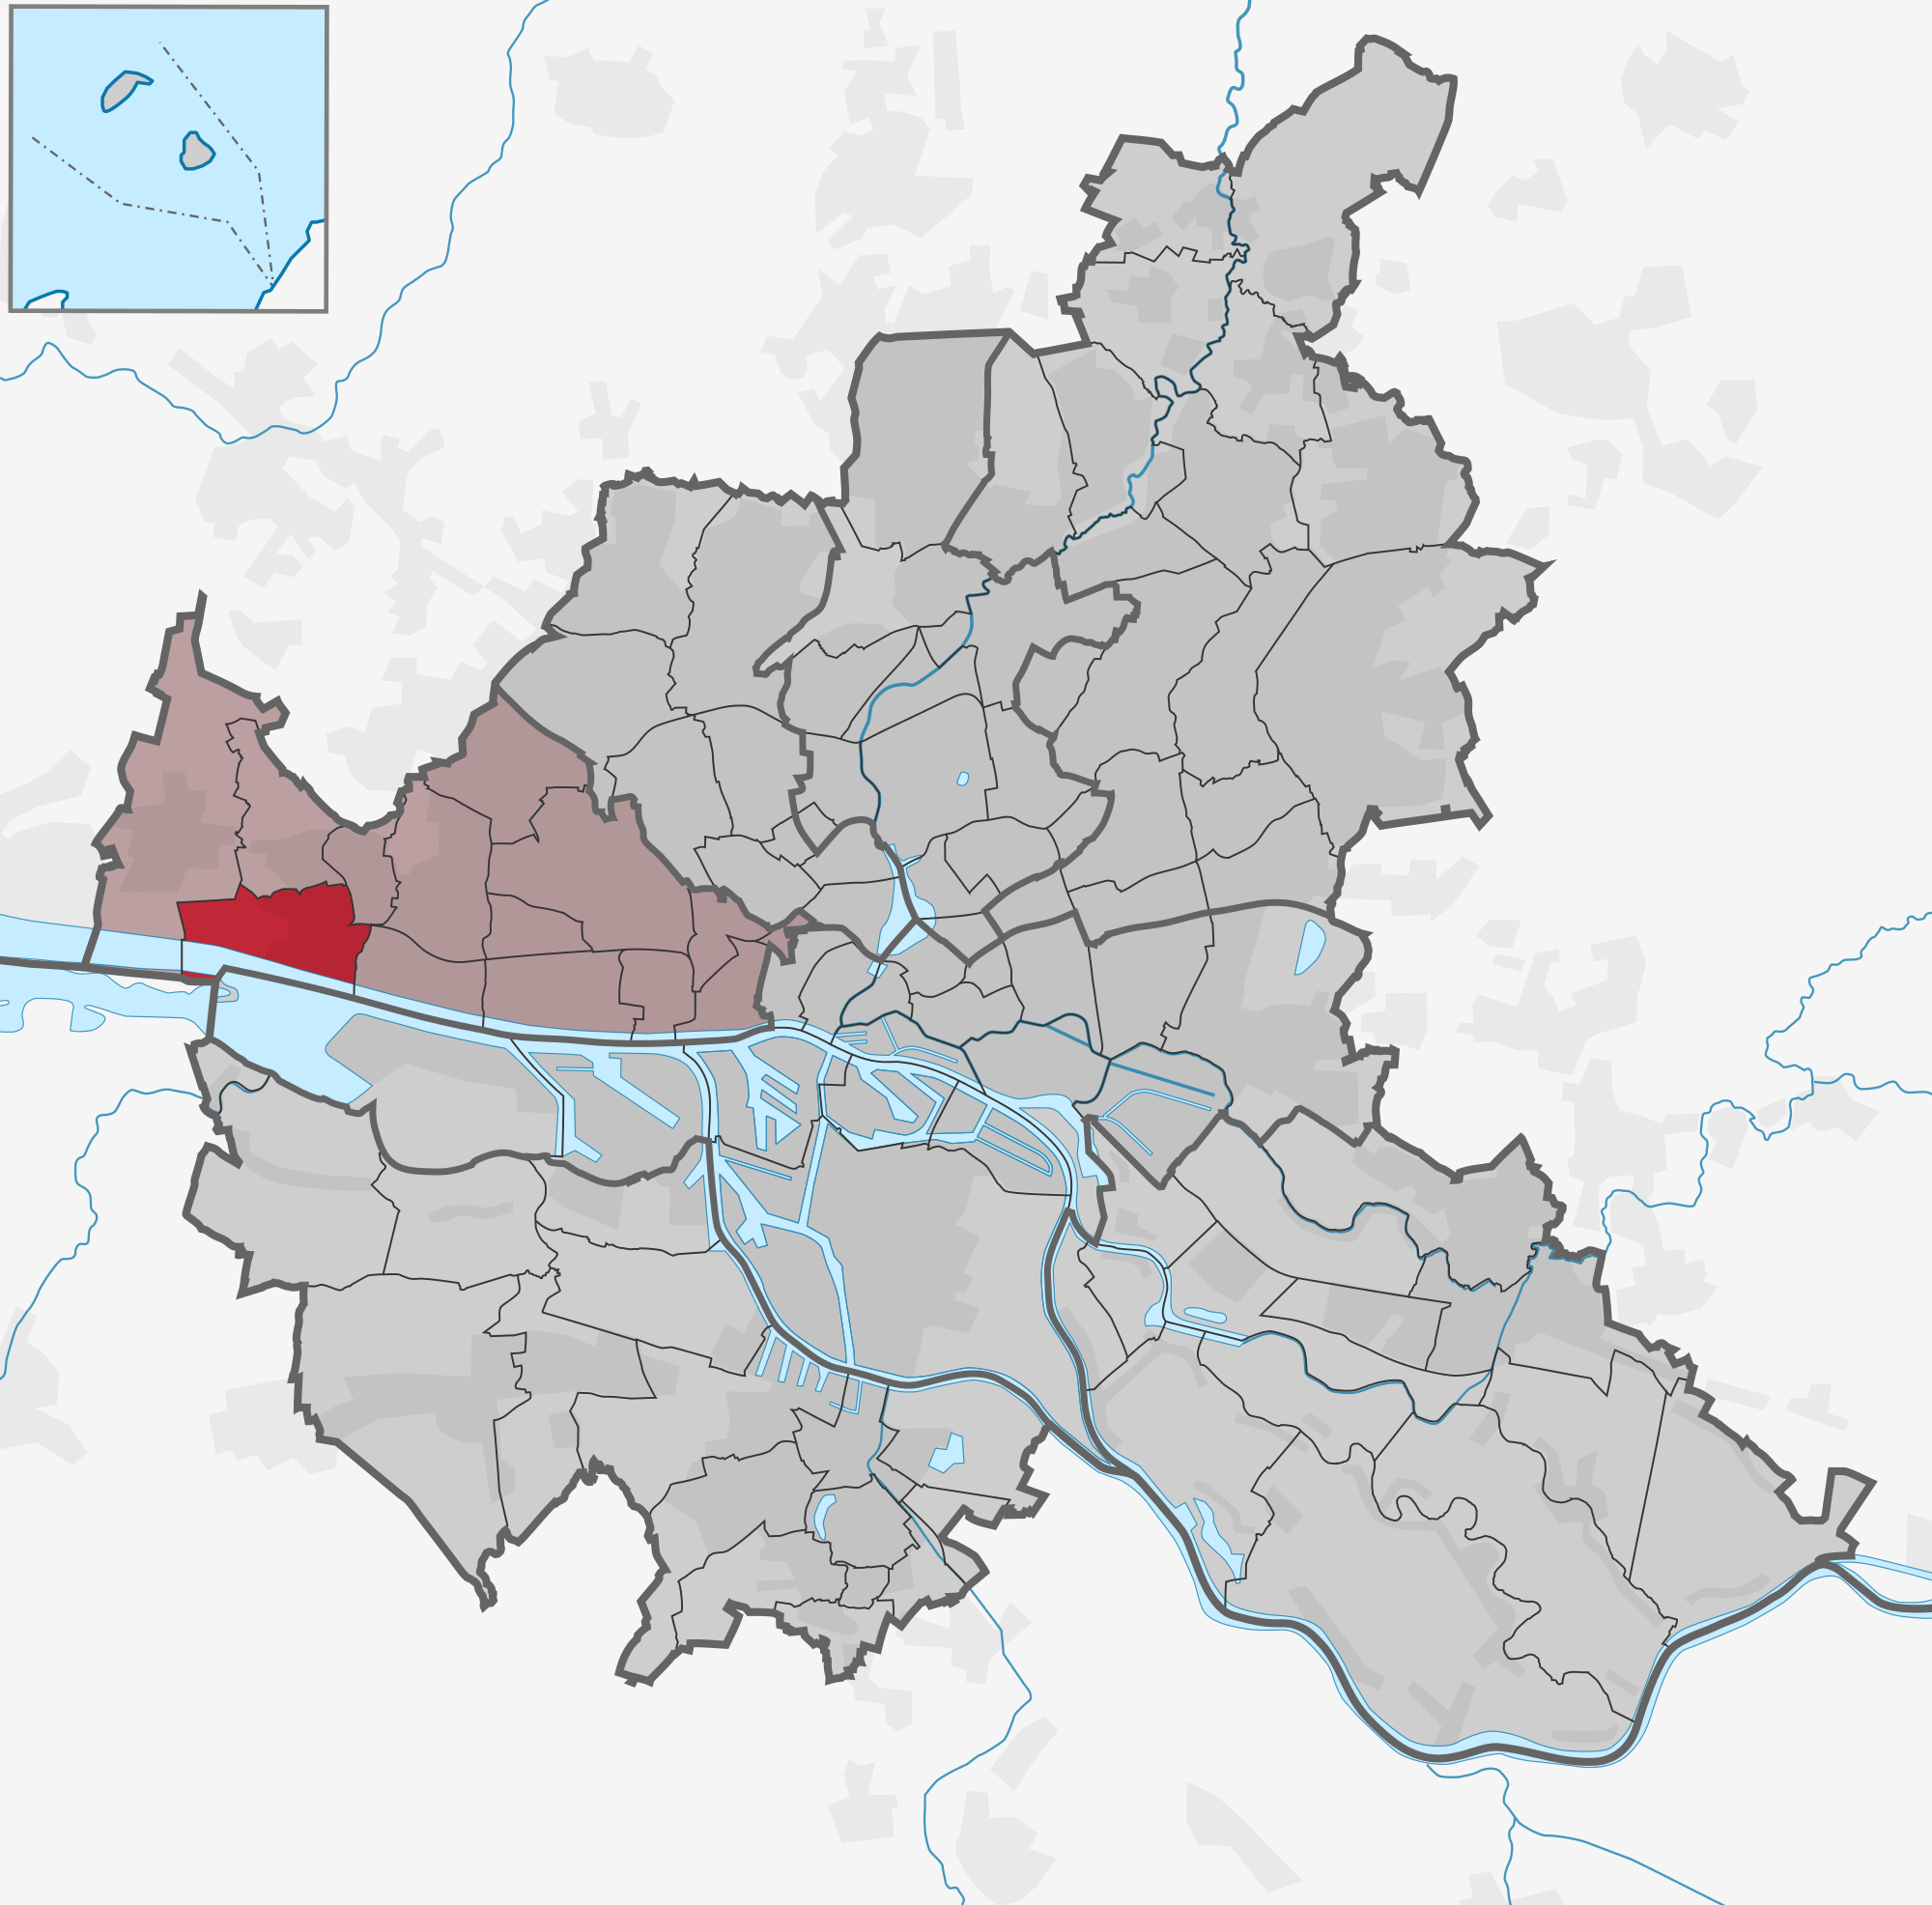 Stadtteil Blankenese (Bezirk Altona)